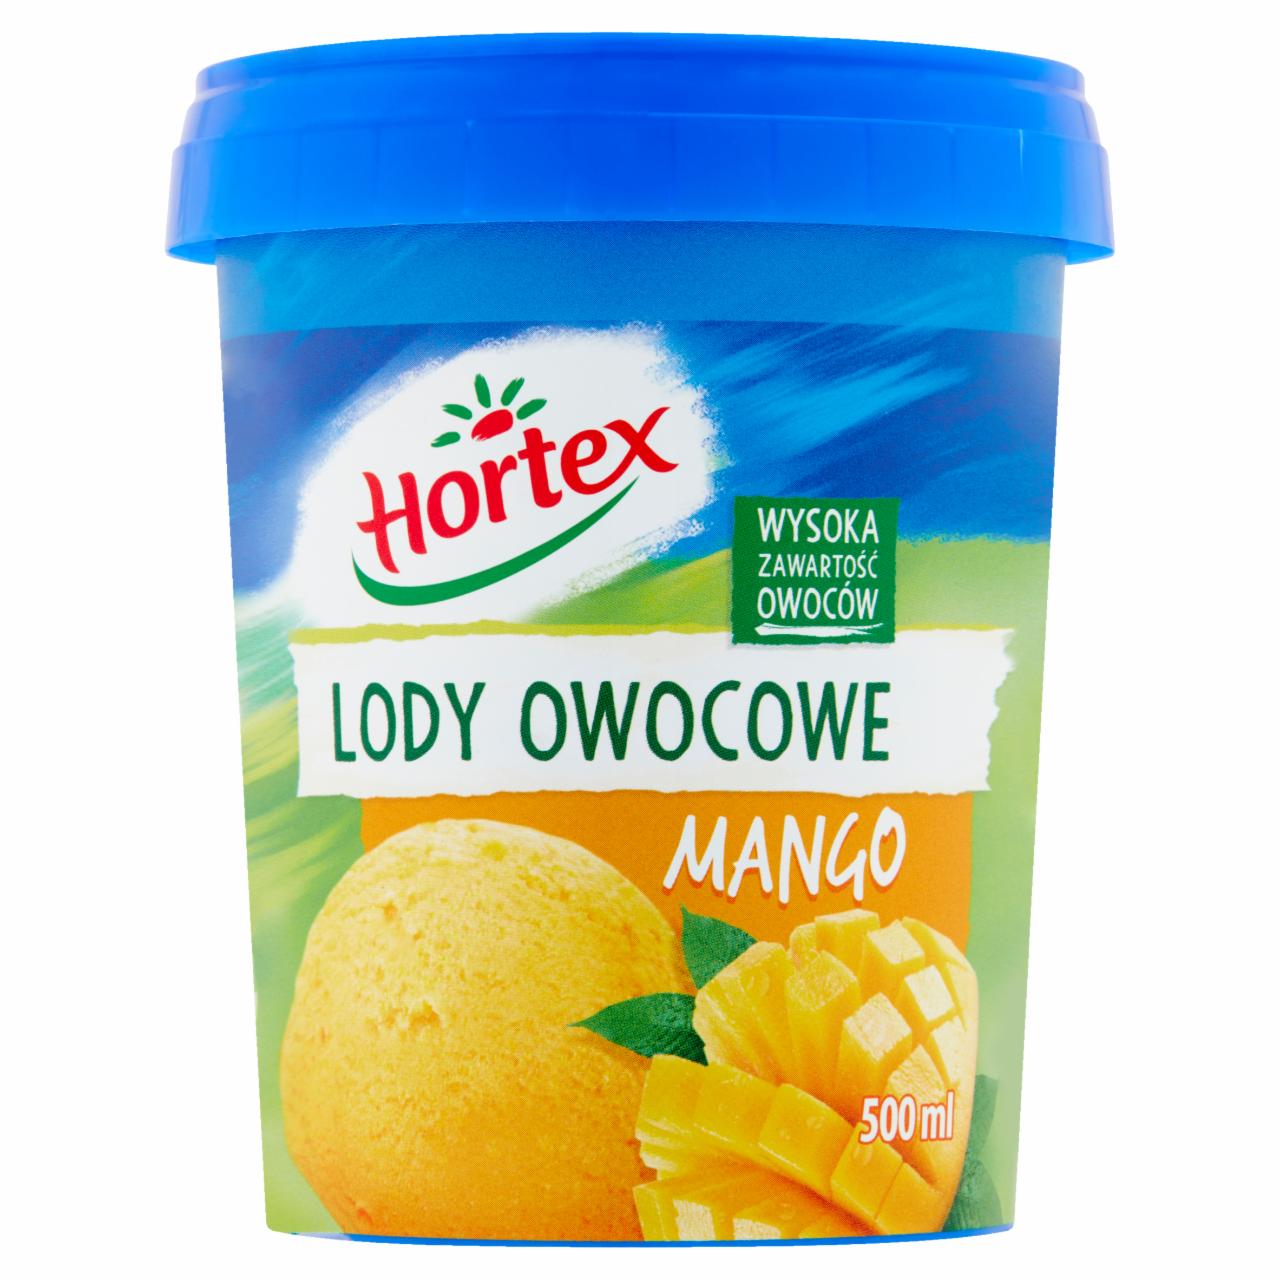 Zdjęcia - Hortex Lody owocowe mango 500 ml